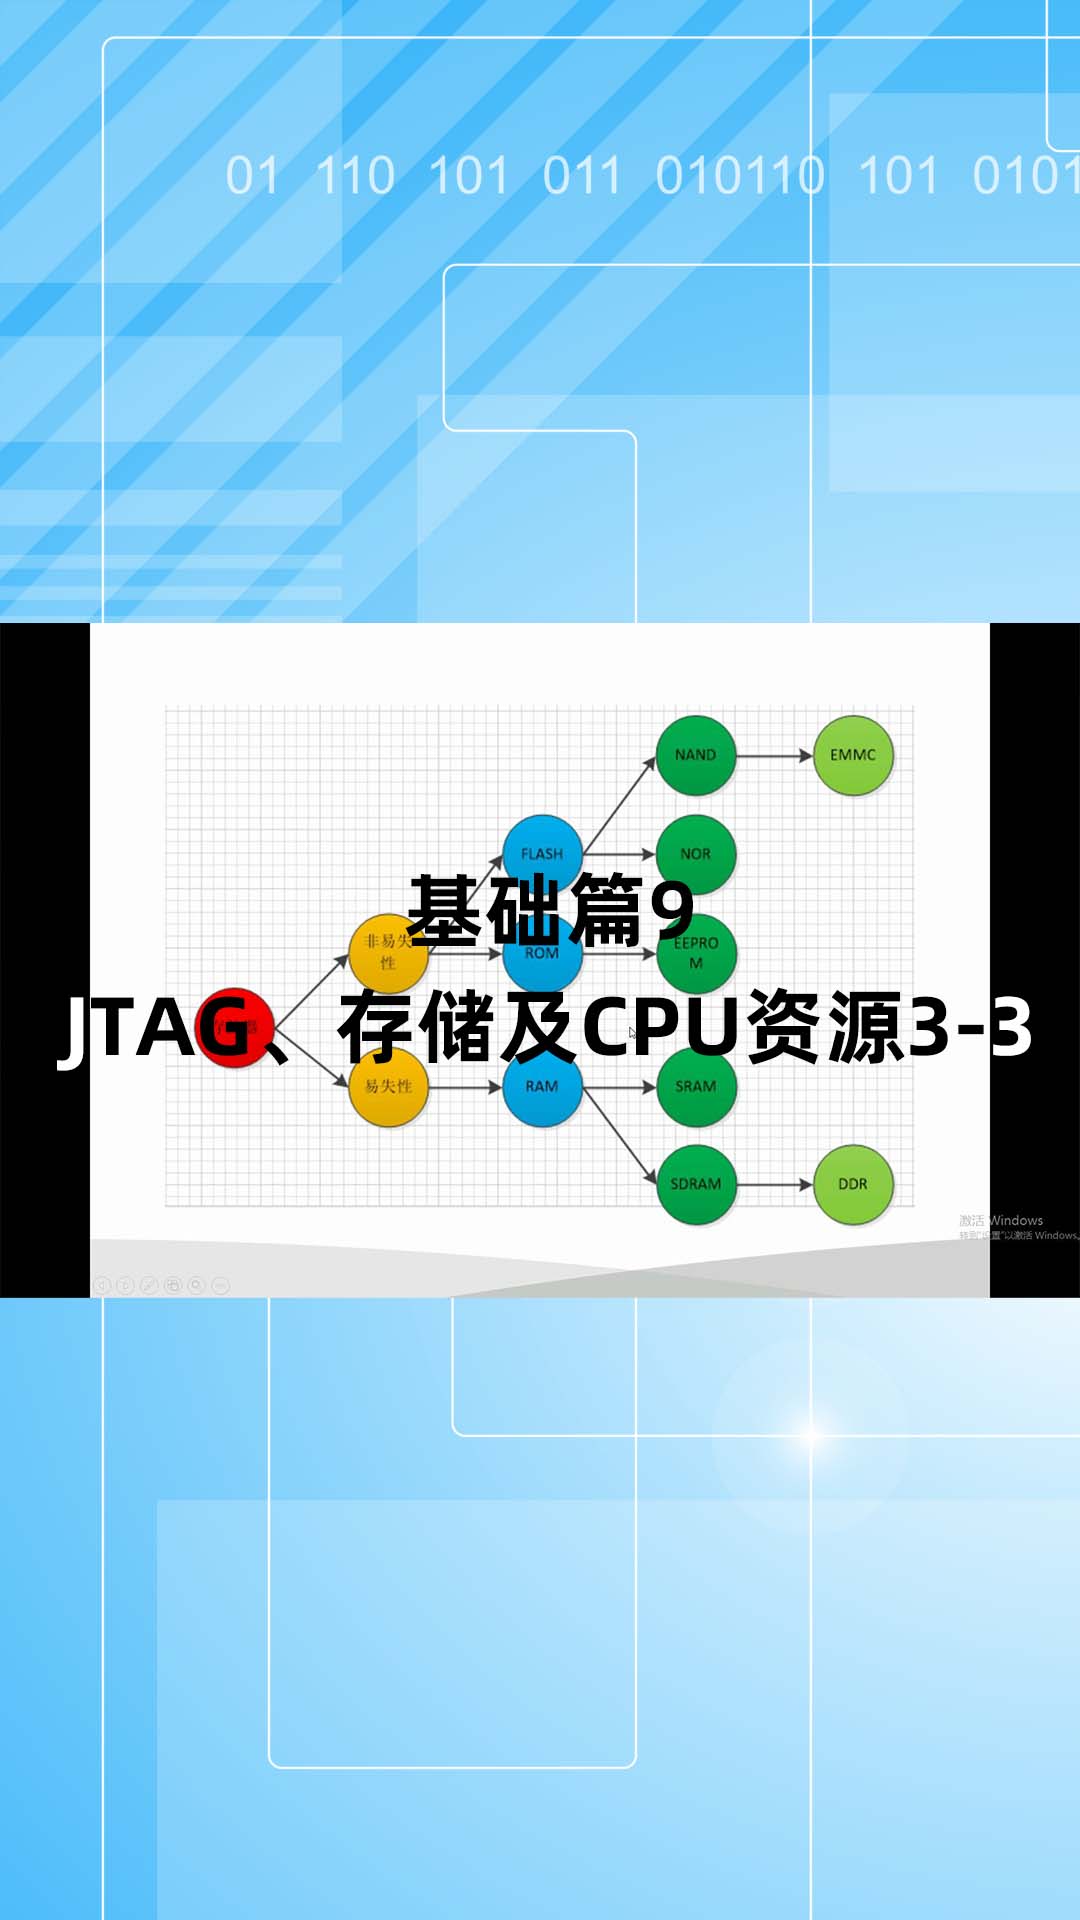 基础篇9 - 1.9_JTAG、存储及CPU资源3.